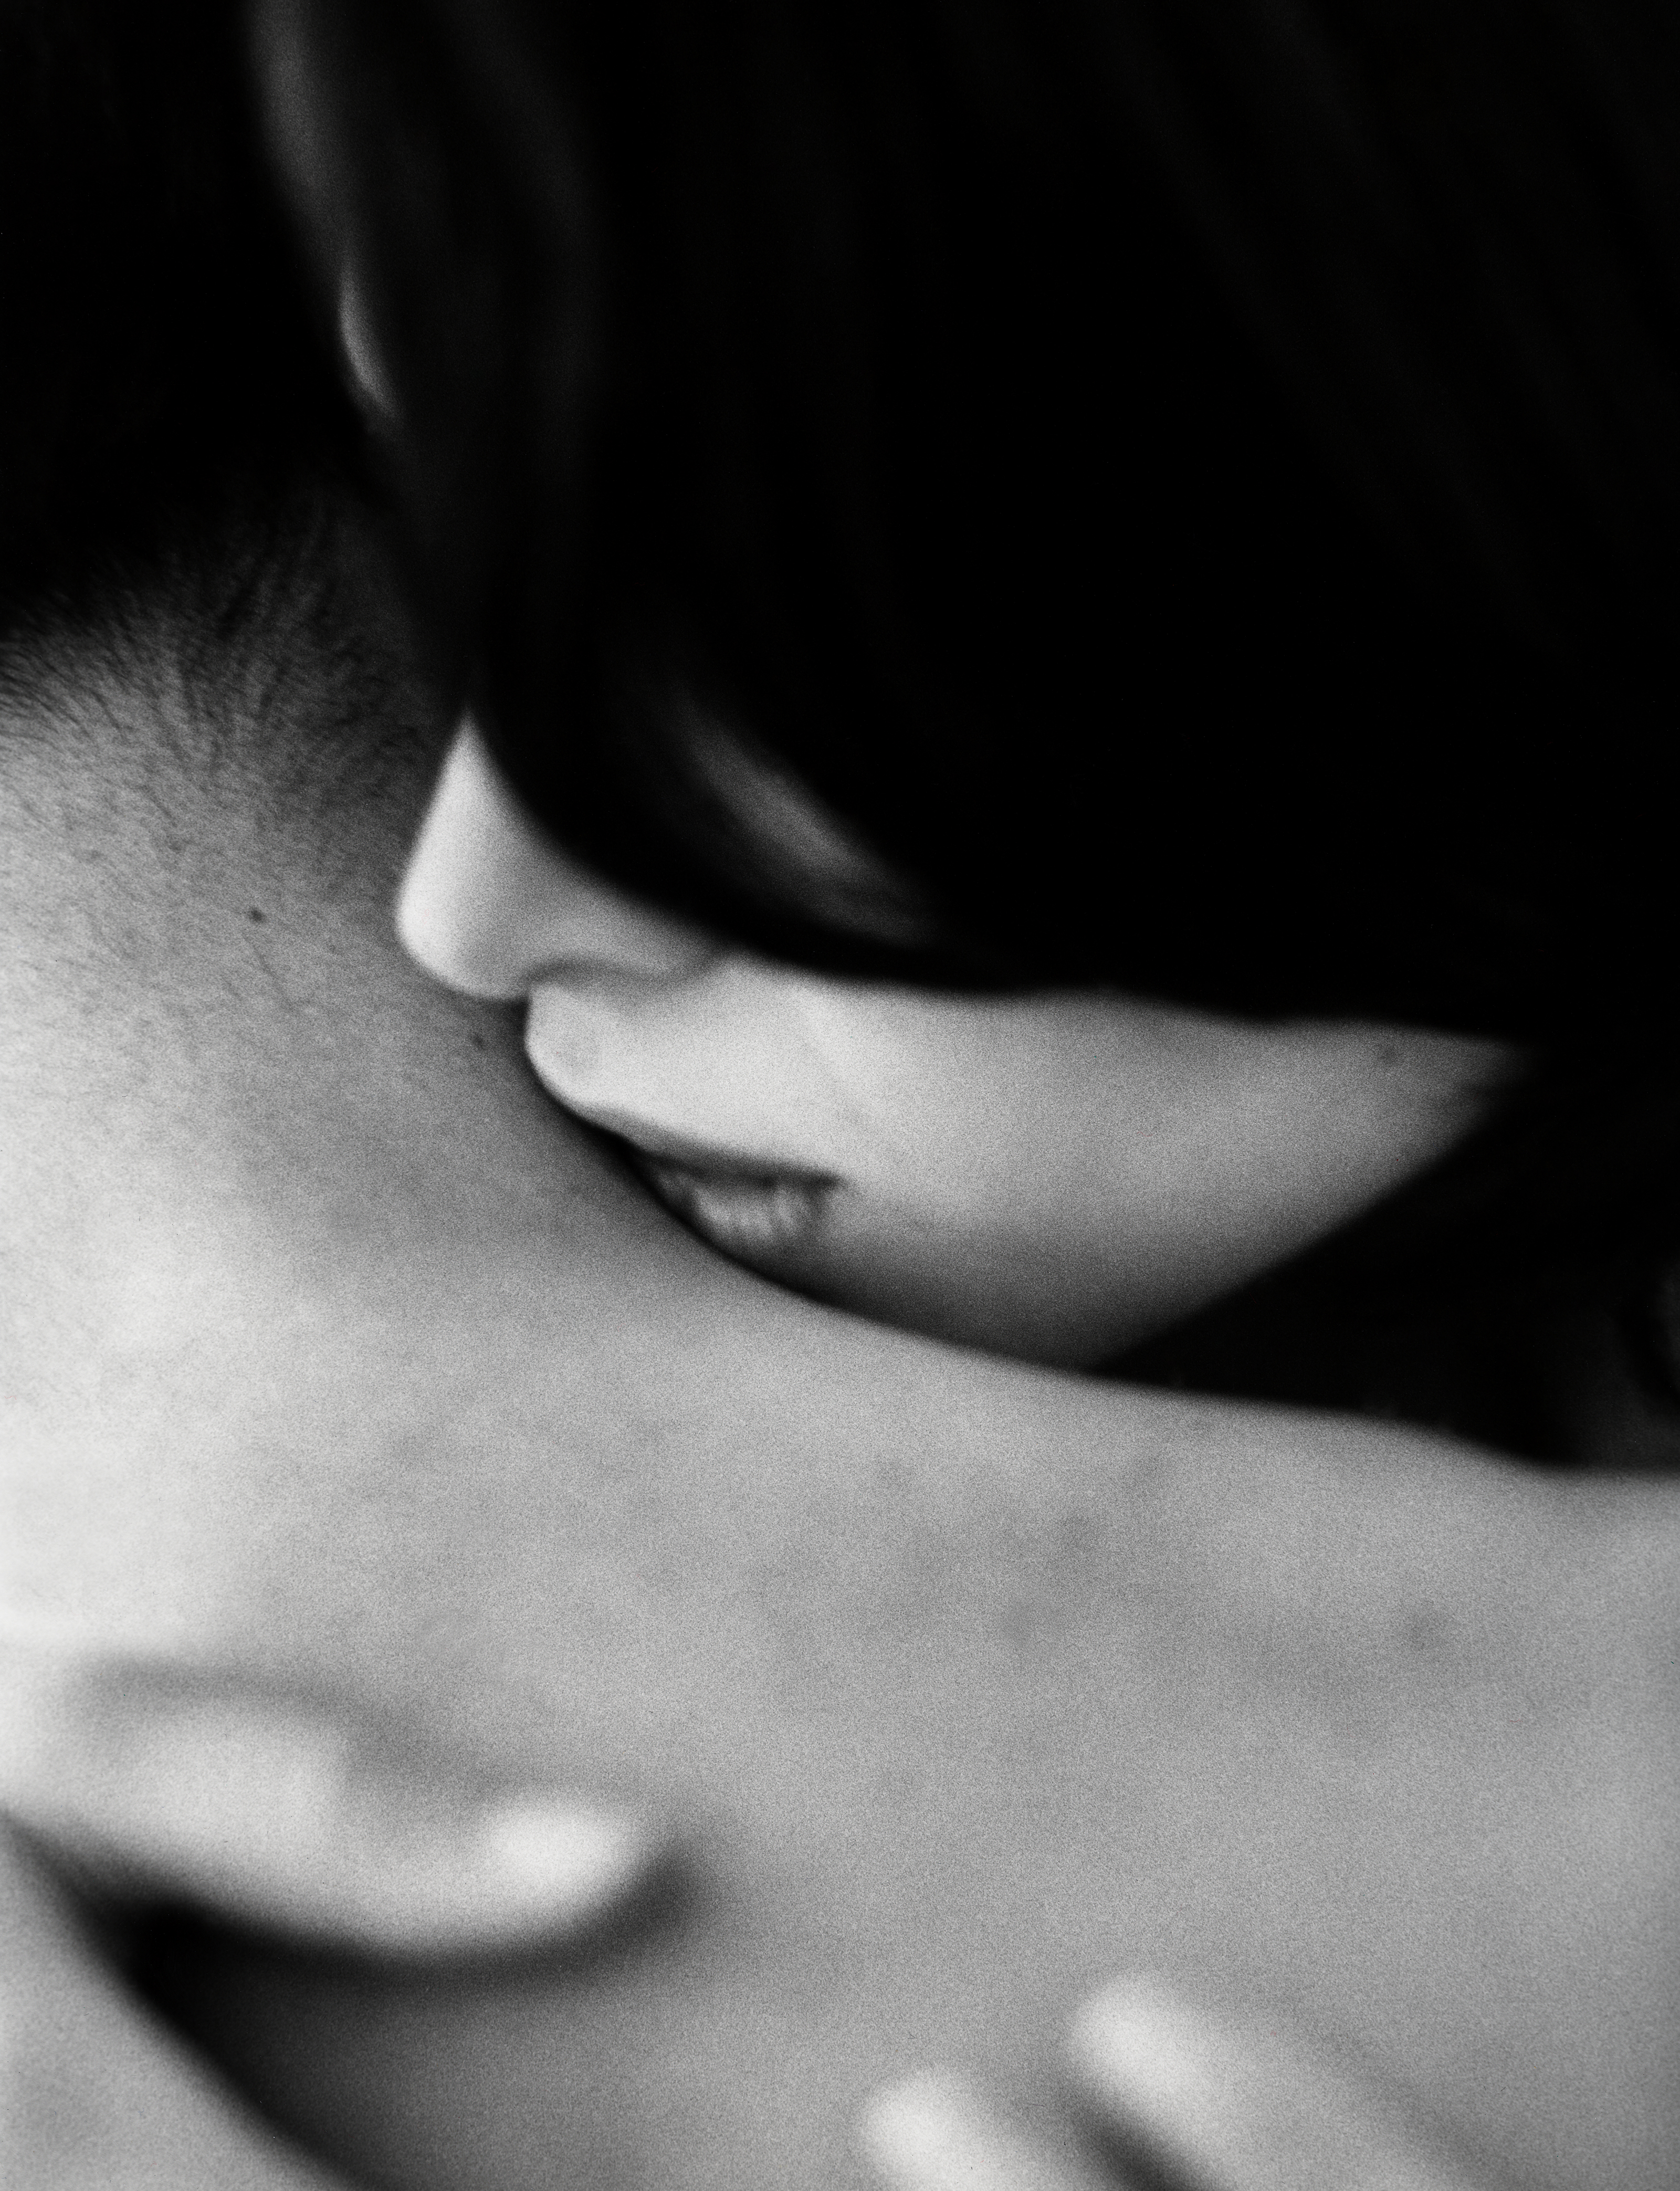 Начал целовать шею. Поцелуй в шею. Мужчина целует женщину в шею. Нежный поцелуй в шею. Поцелуй в шею мужчине.